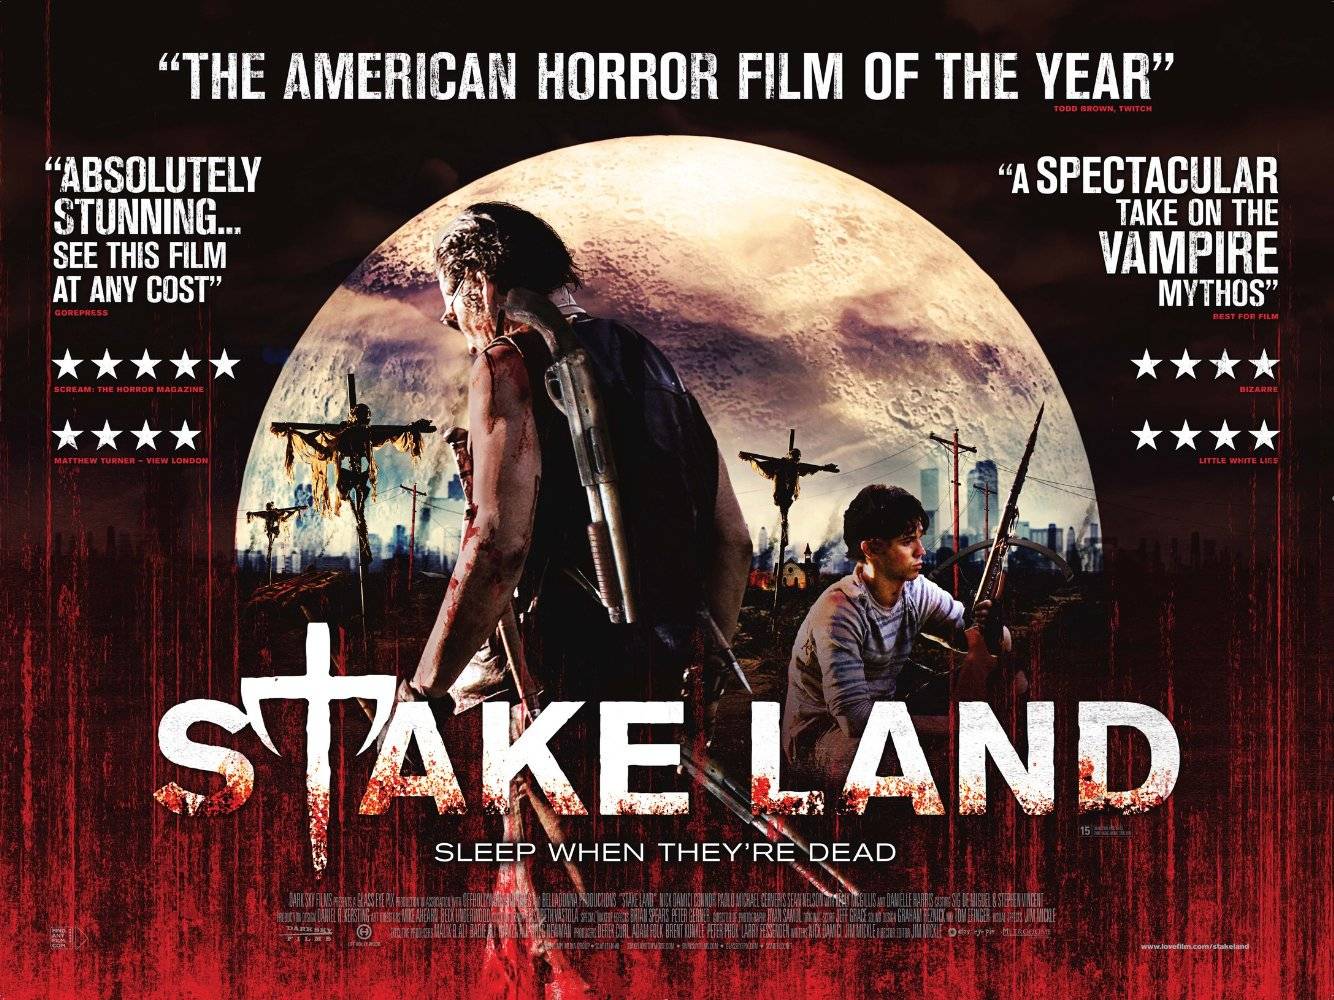 Stake Land / Stake Land (2011)